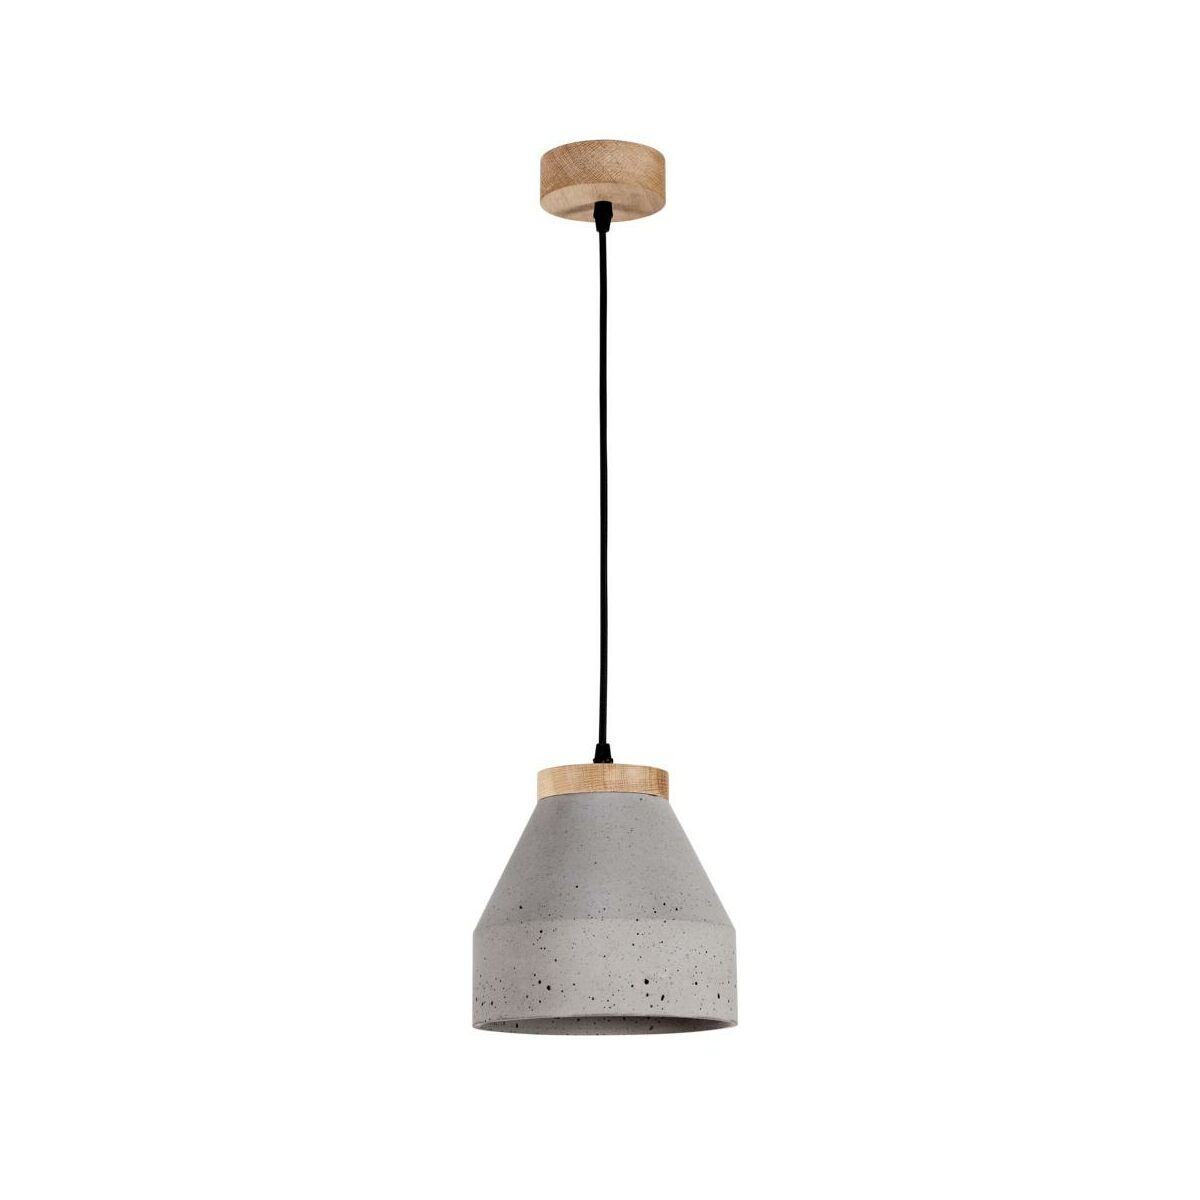 Lampa wisząca Tristan beton z drewnem E27 Spot-Light